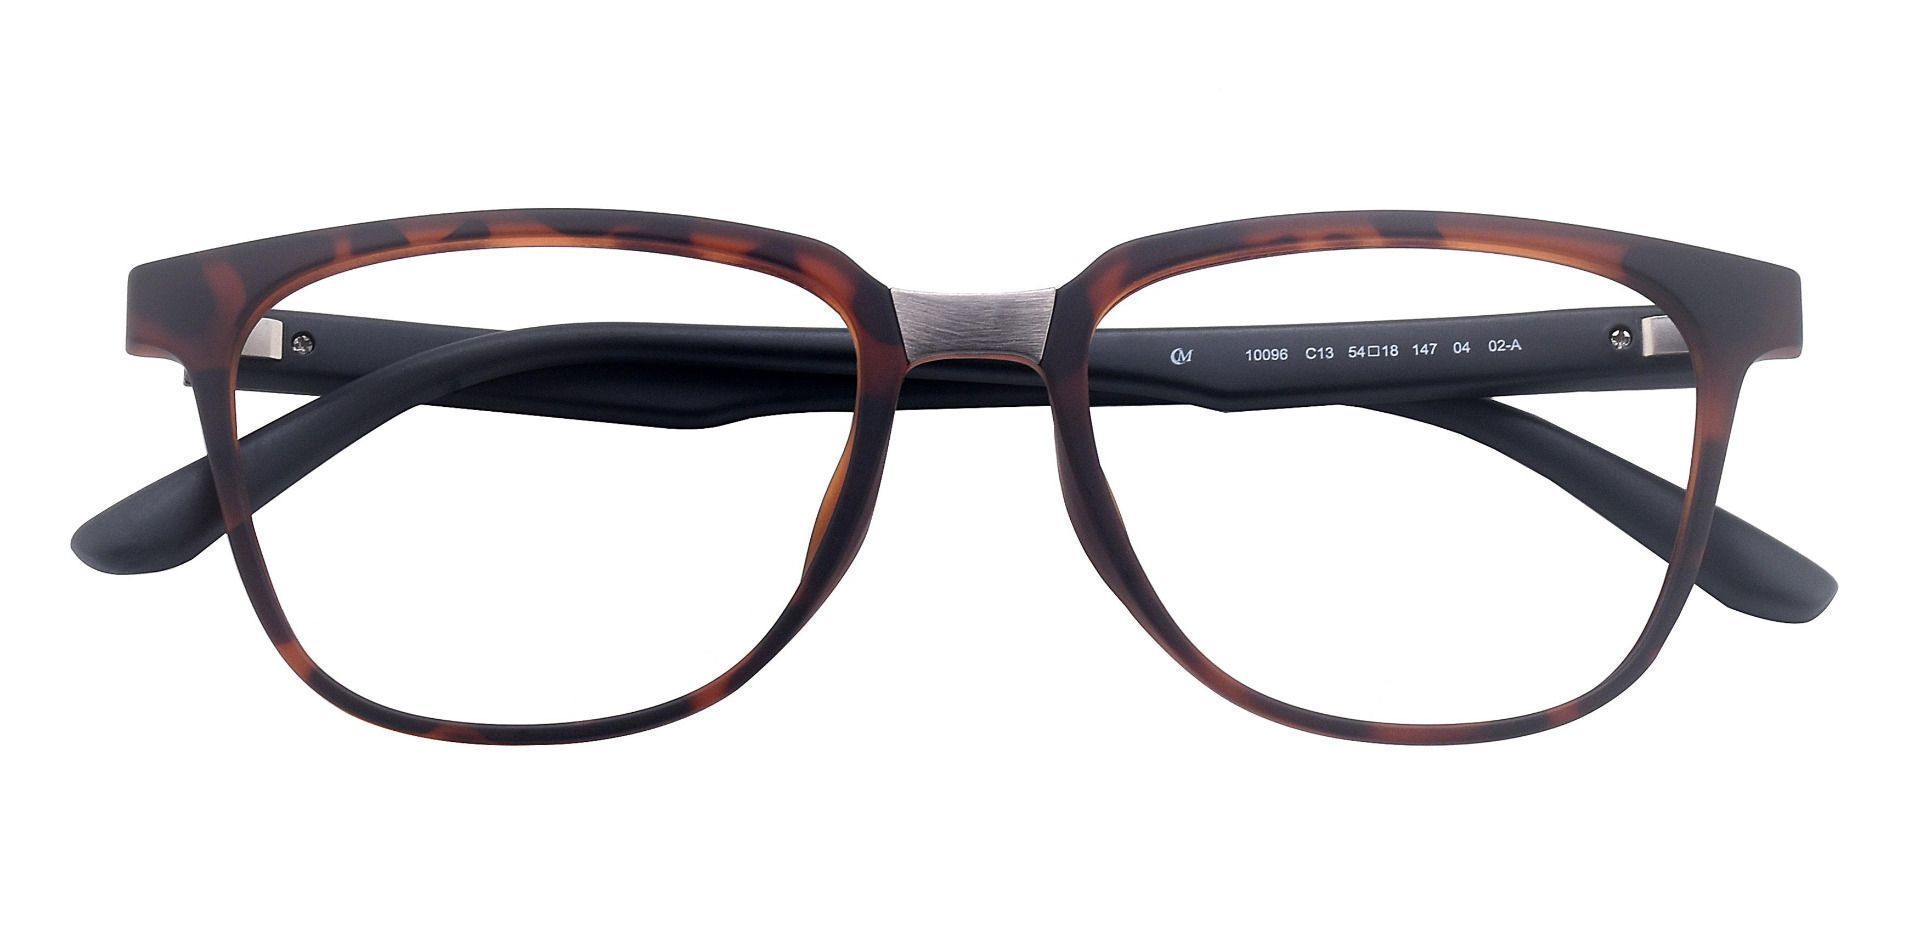 Cole Geometric Non-Rx Glasses - Tortoise